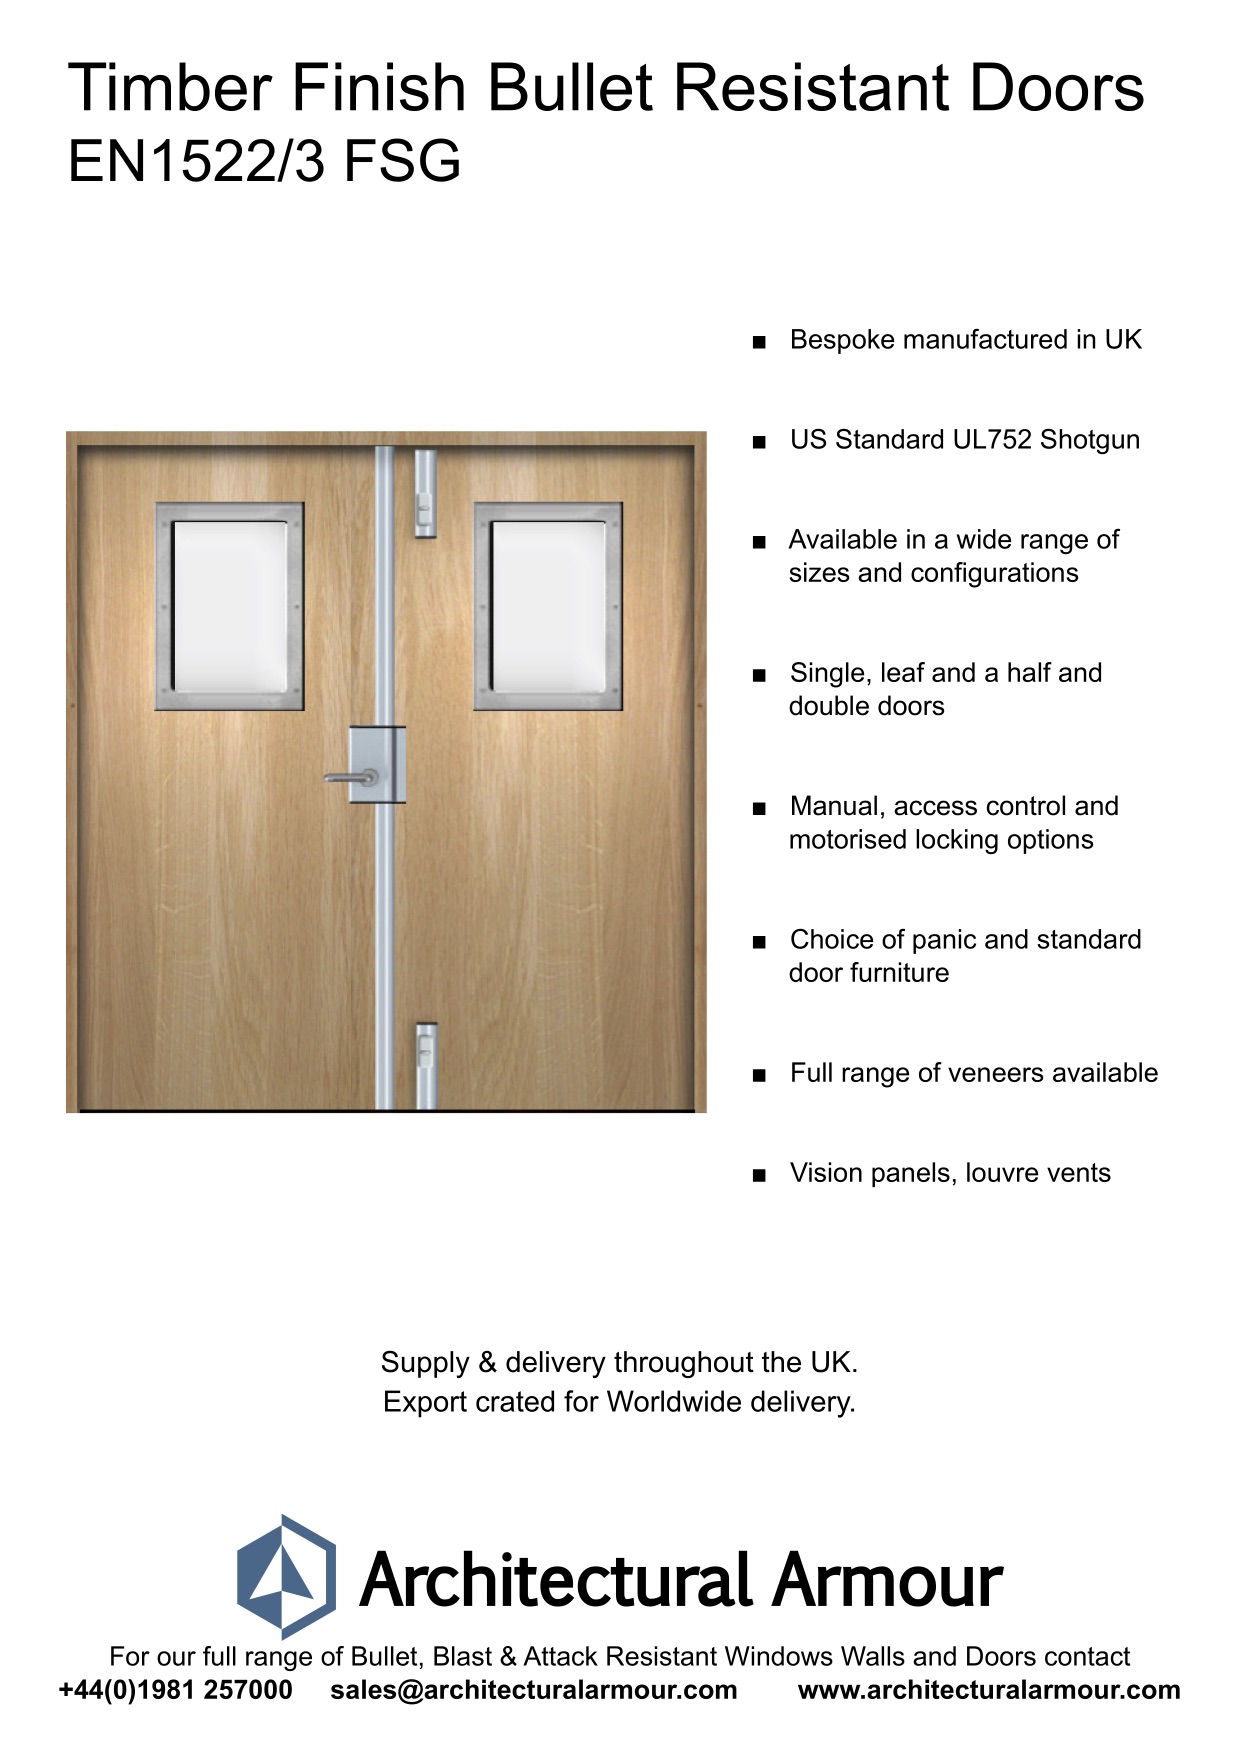 EN1522-3-FSG-Bulletproof-Doors-Vision-Panels